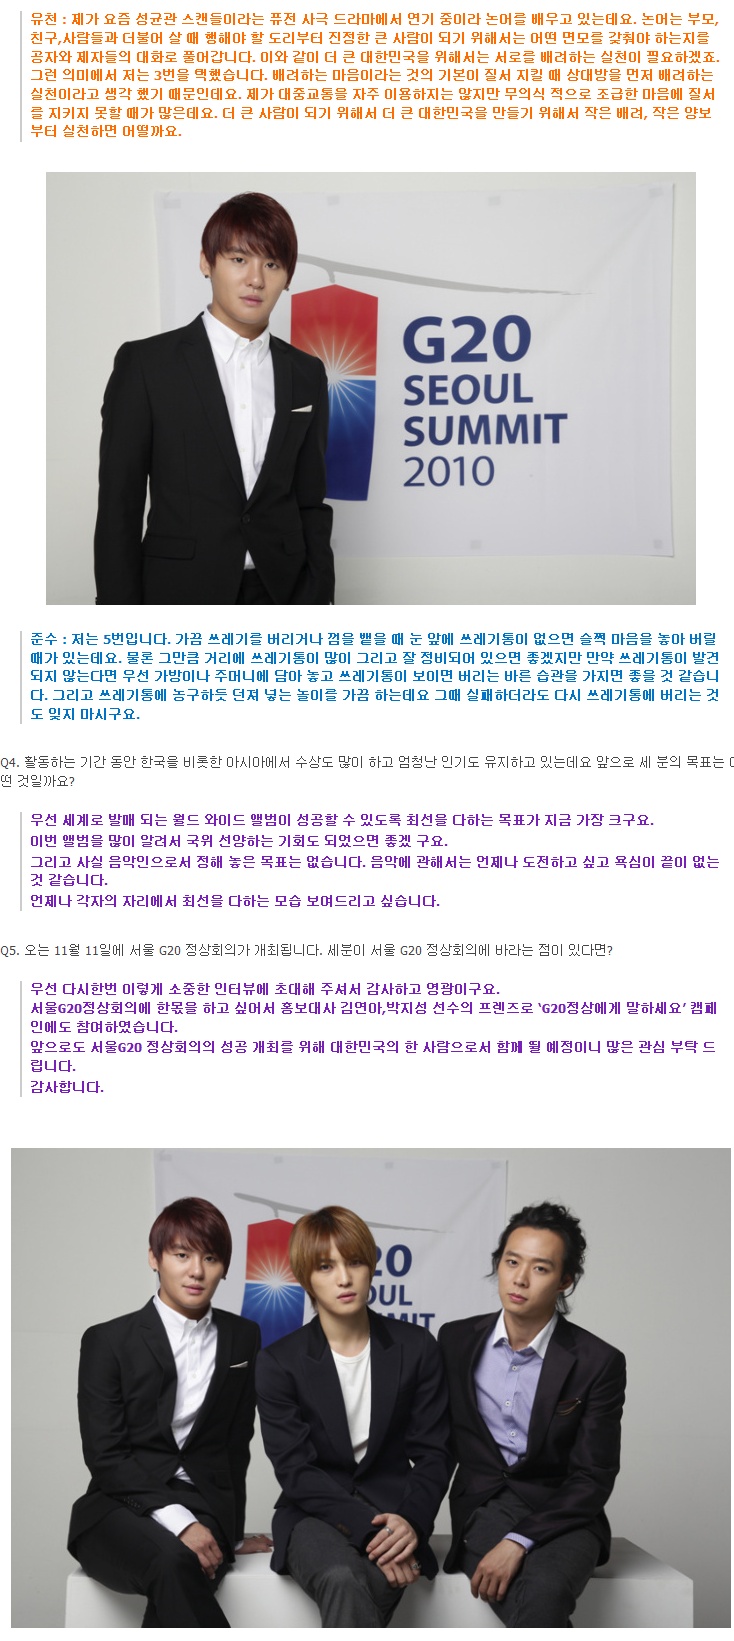 서울 G20 정상회의 릴레이 인터뷰 5th - 재중, 유천, 준수